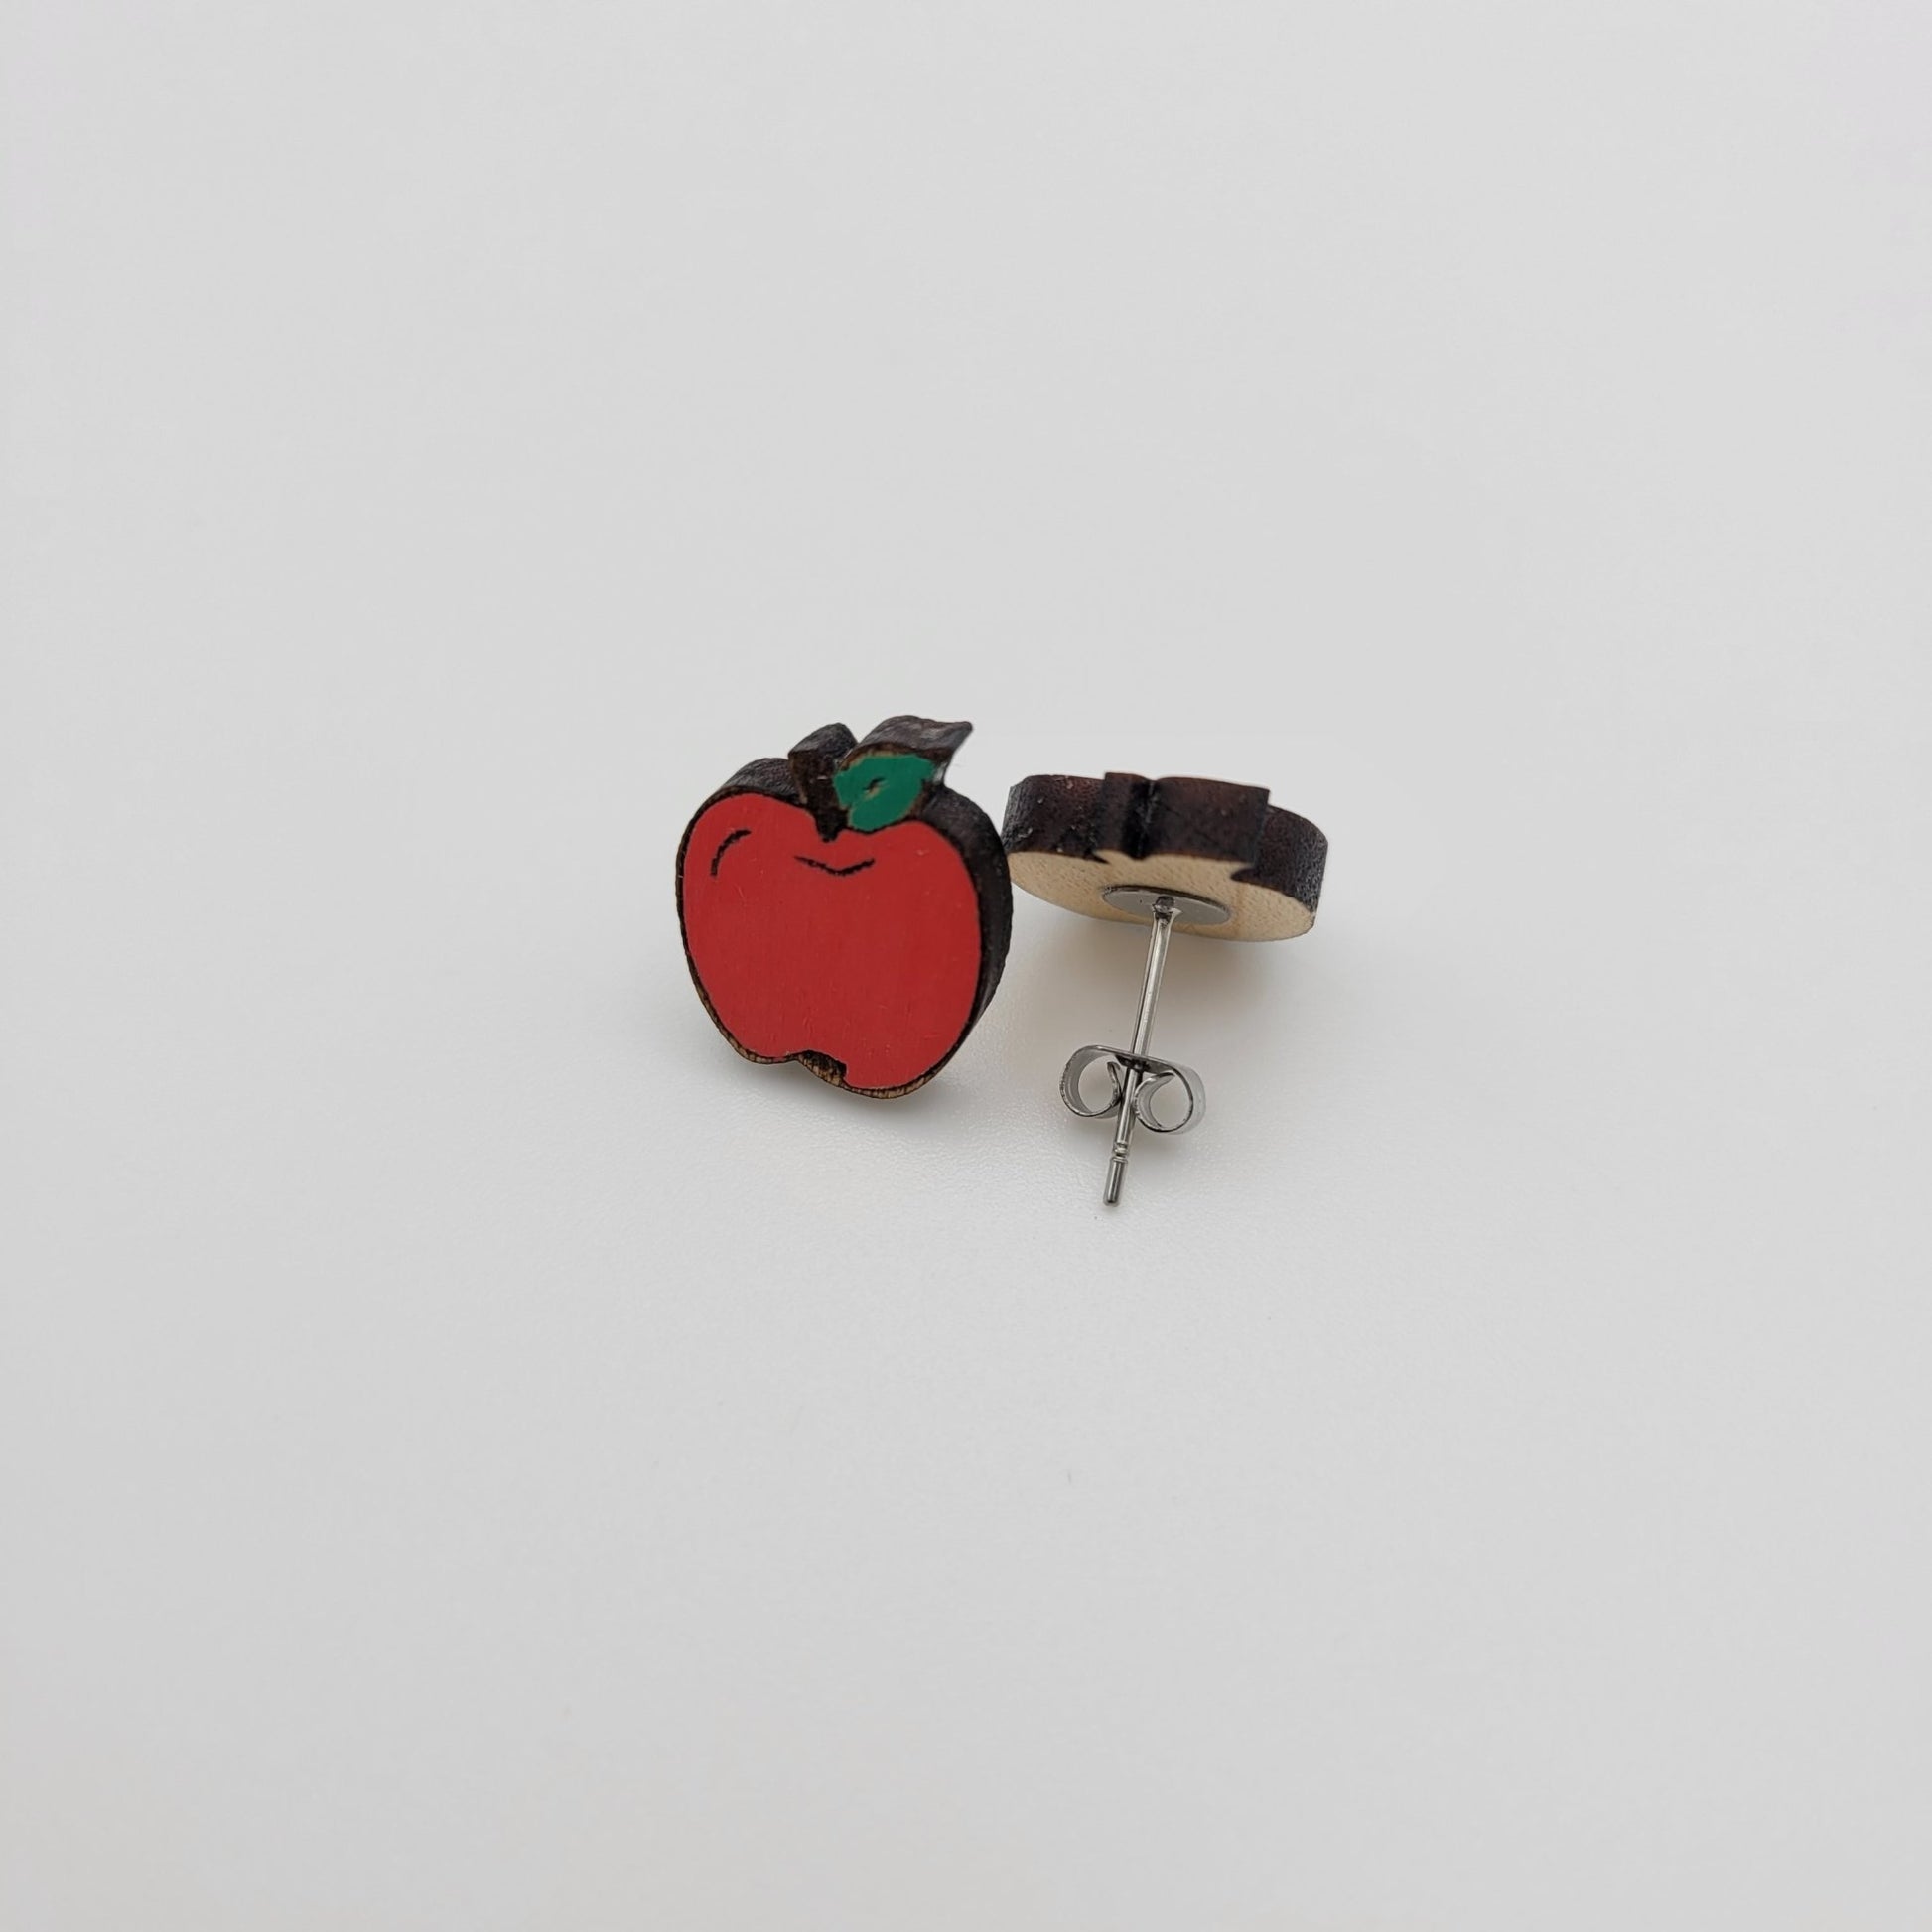 Hand Painted Apple Stud Earrings - 4 Arrows Creations